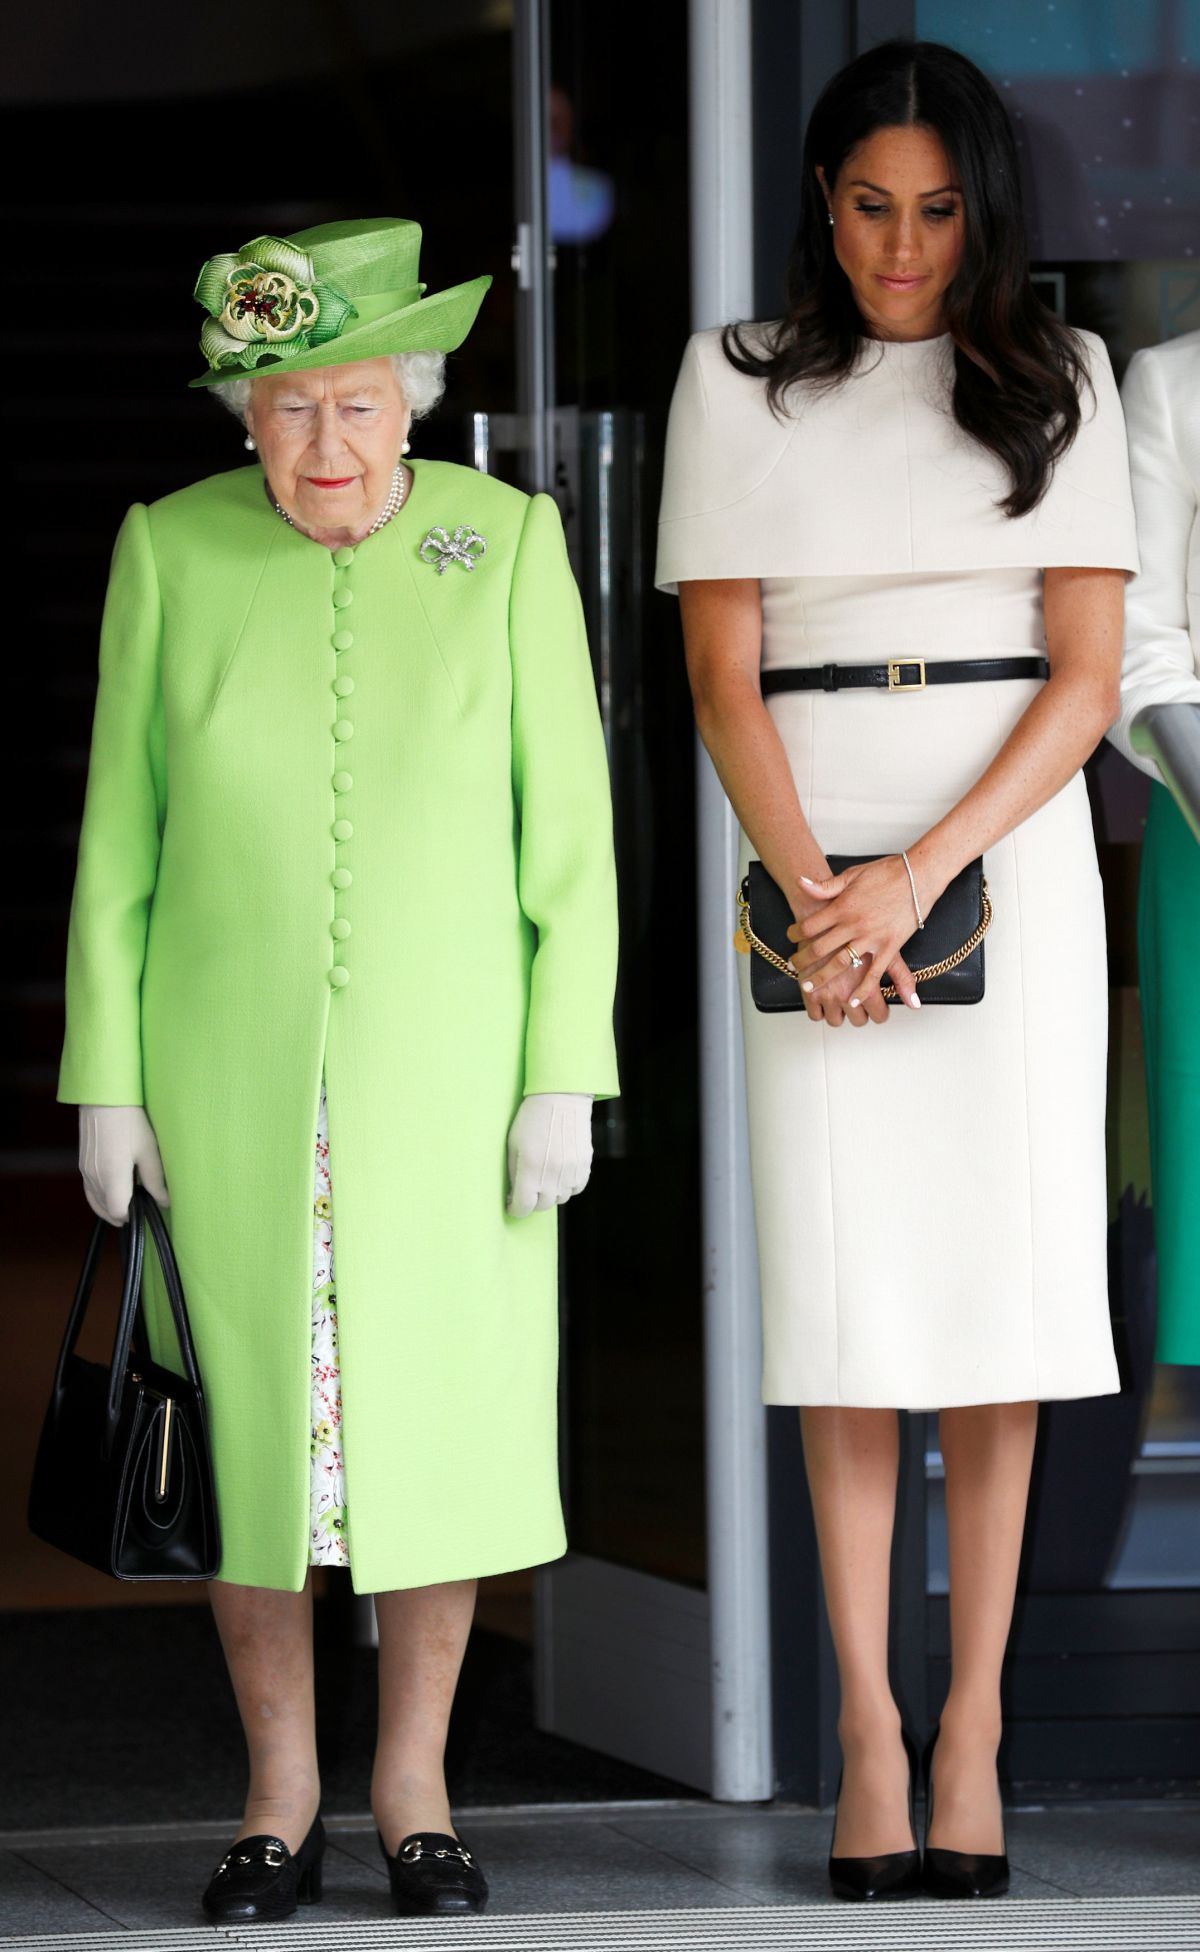 Regina Elisabeta a II-a, îmbrăcată într-un costum verde fistic, alături de Meghan Markle, care poartă o rochie de culoare albă, accesorizată cu o curea subțire neagră.